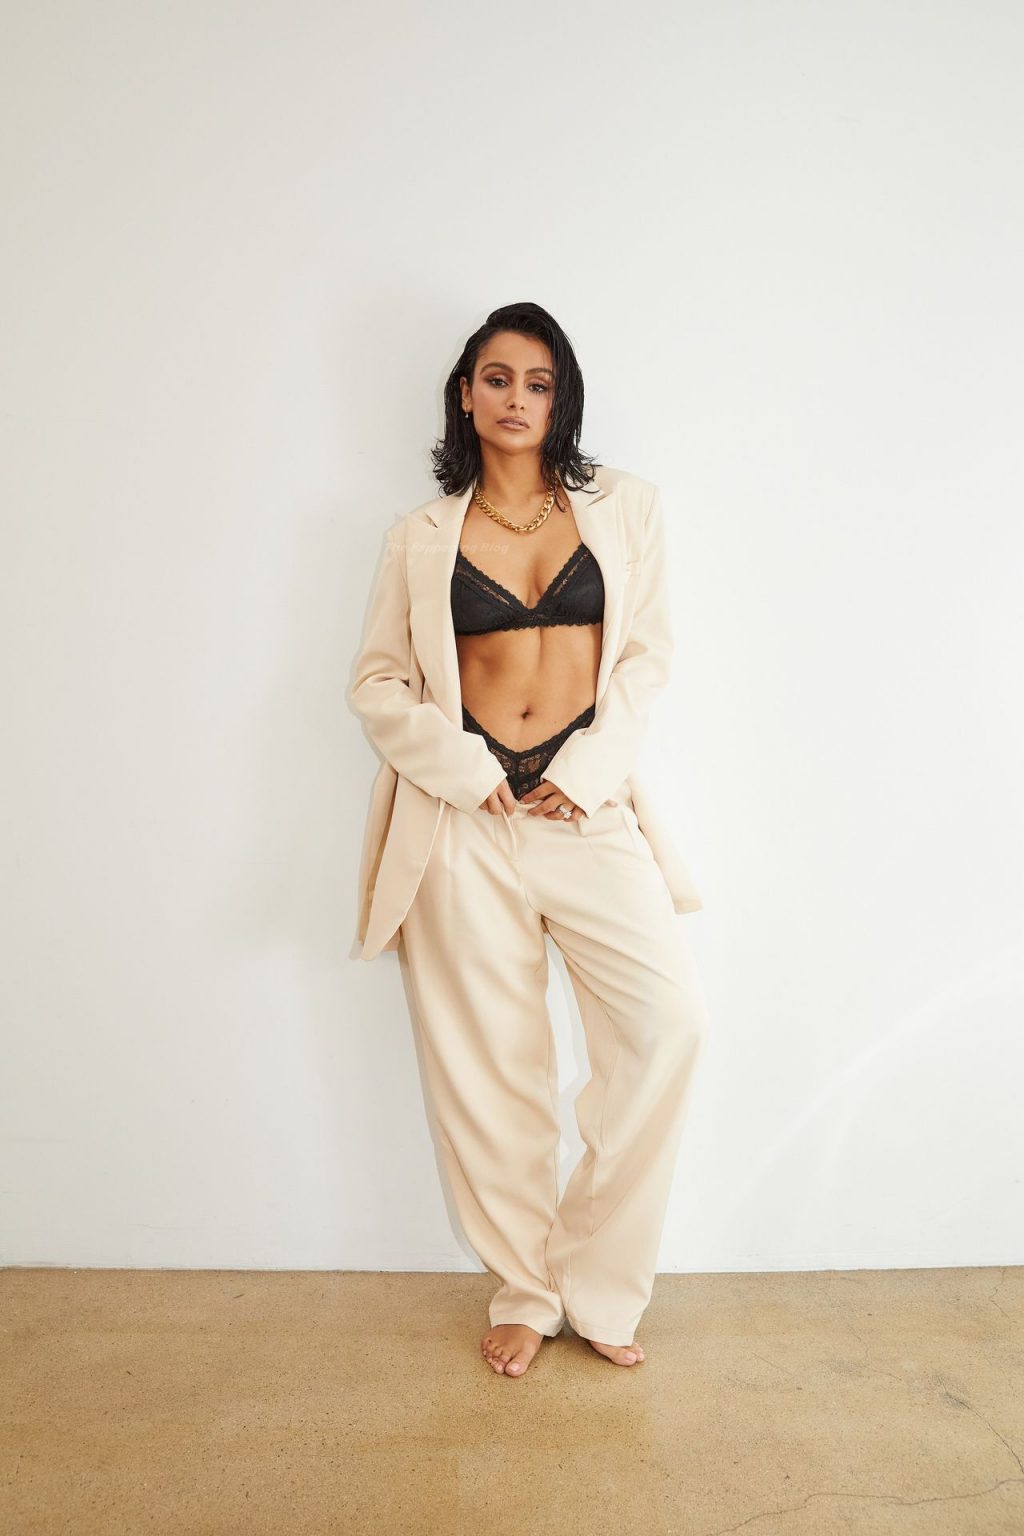 Nazanin Mandi Poses in Lingerie for Her New Line Elle Rêve (24 Photos)